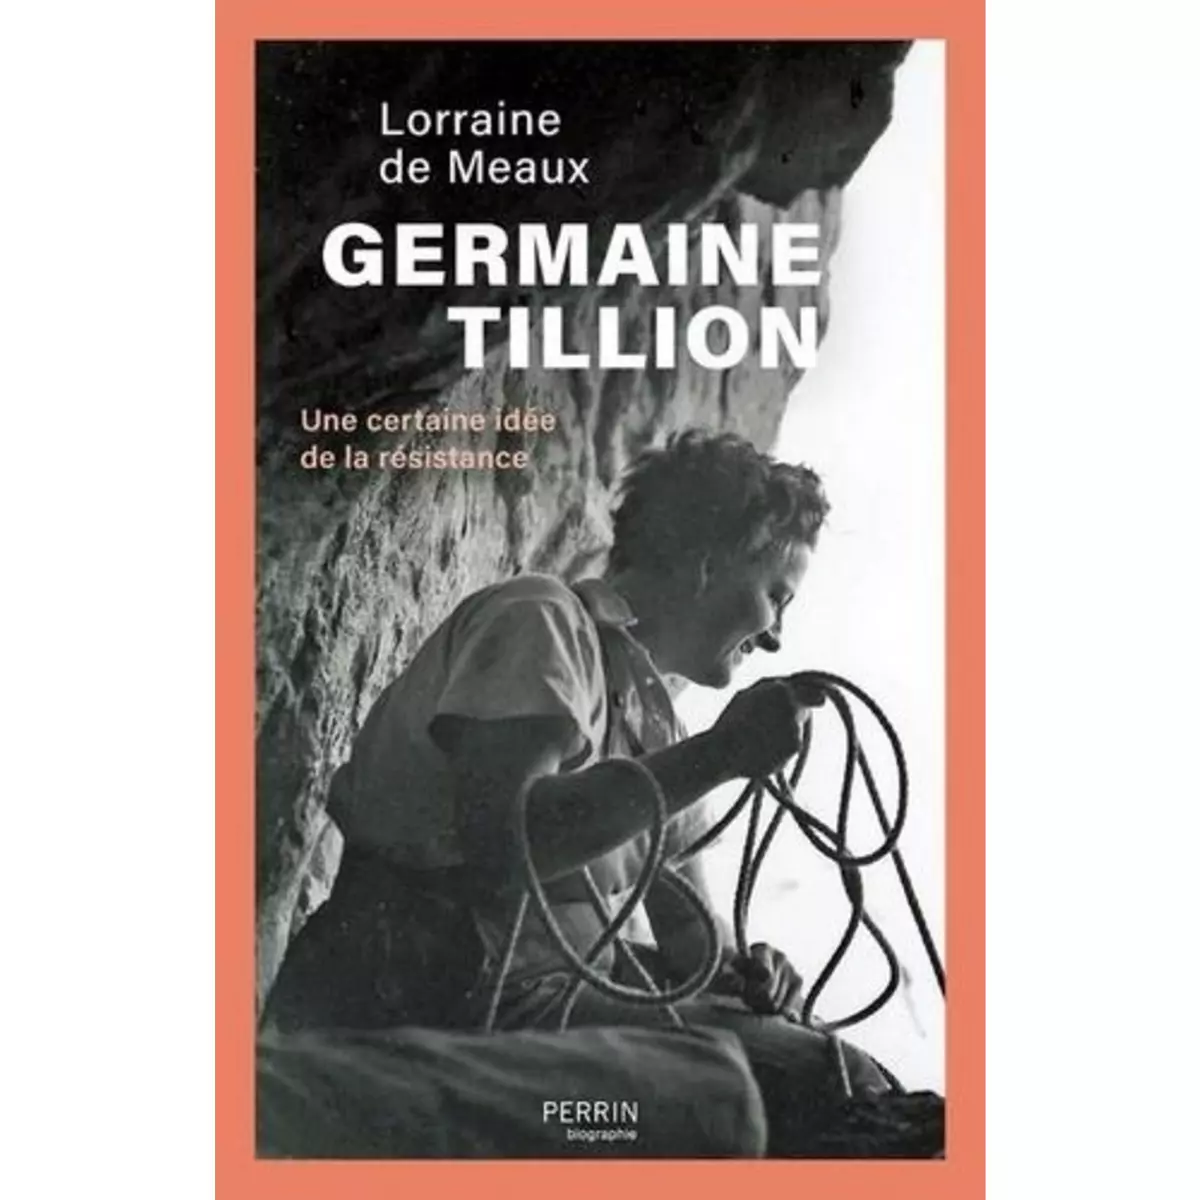  GERMAINE TILLION. UNE CERTAINE IDEE DE LA RESISTANCE, Meaux Lorraine de